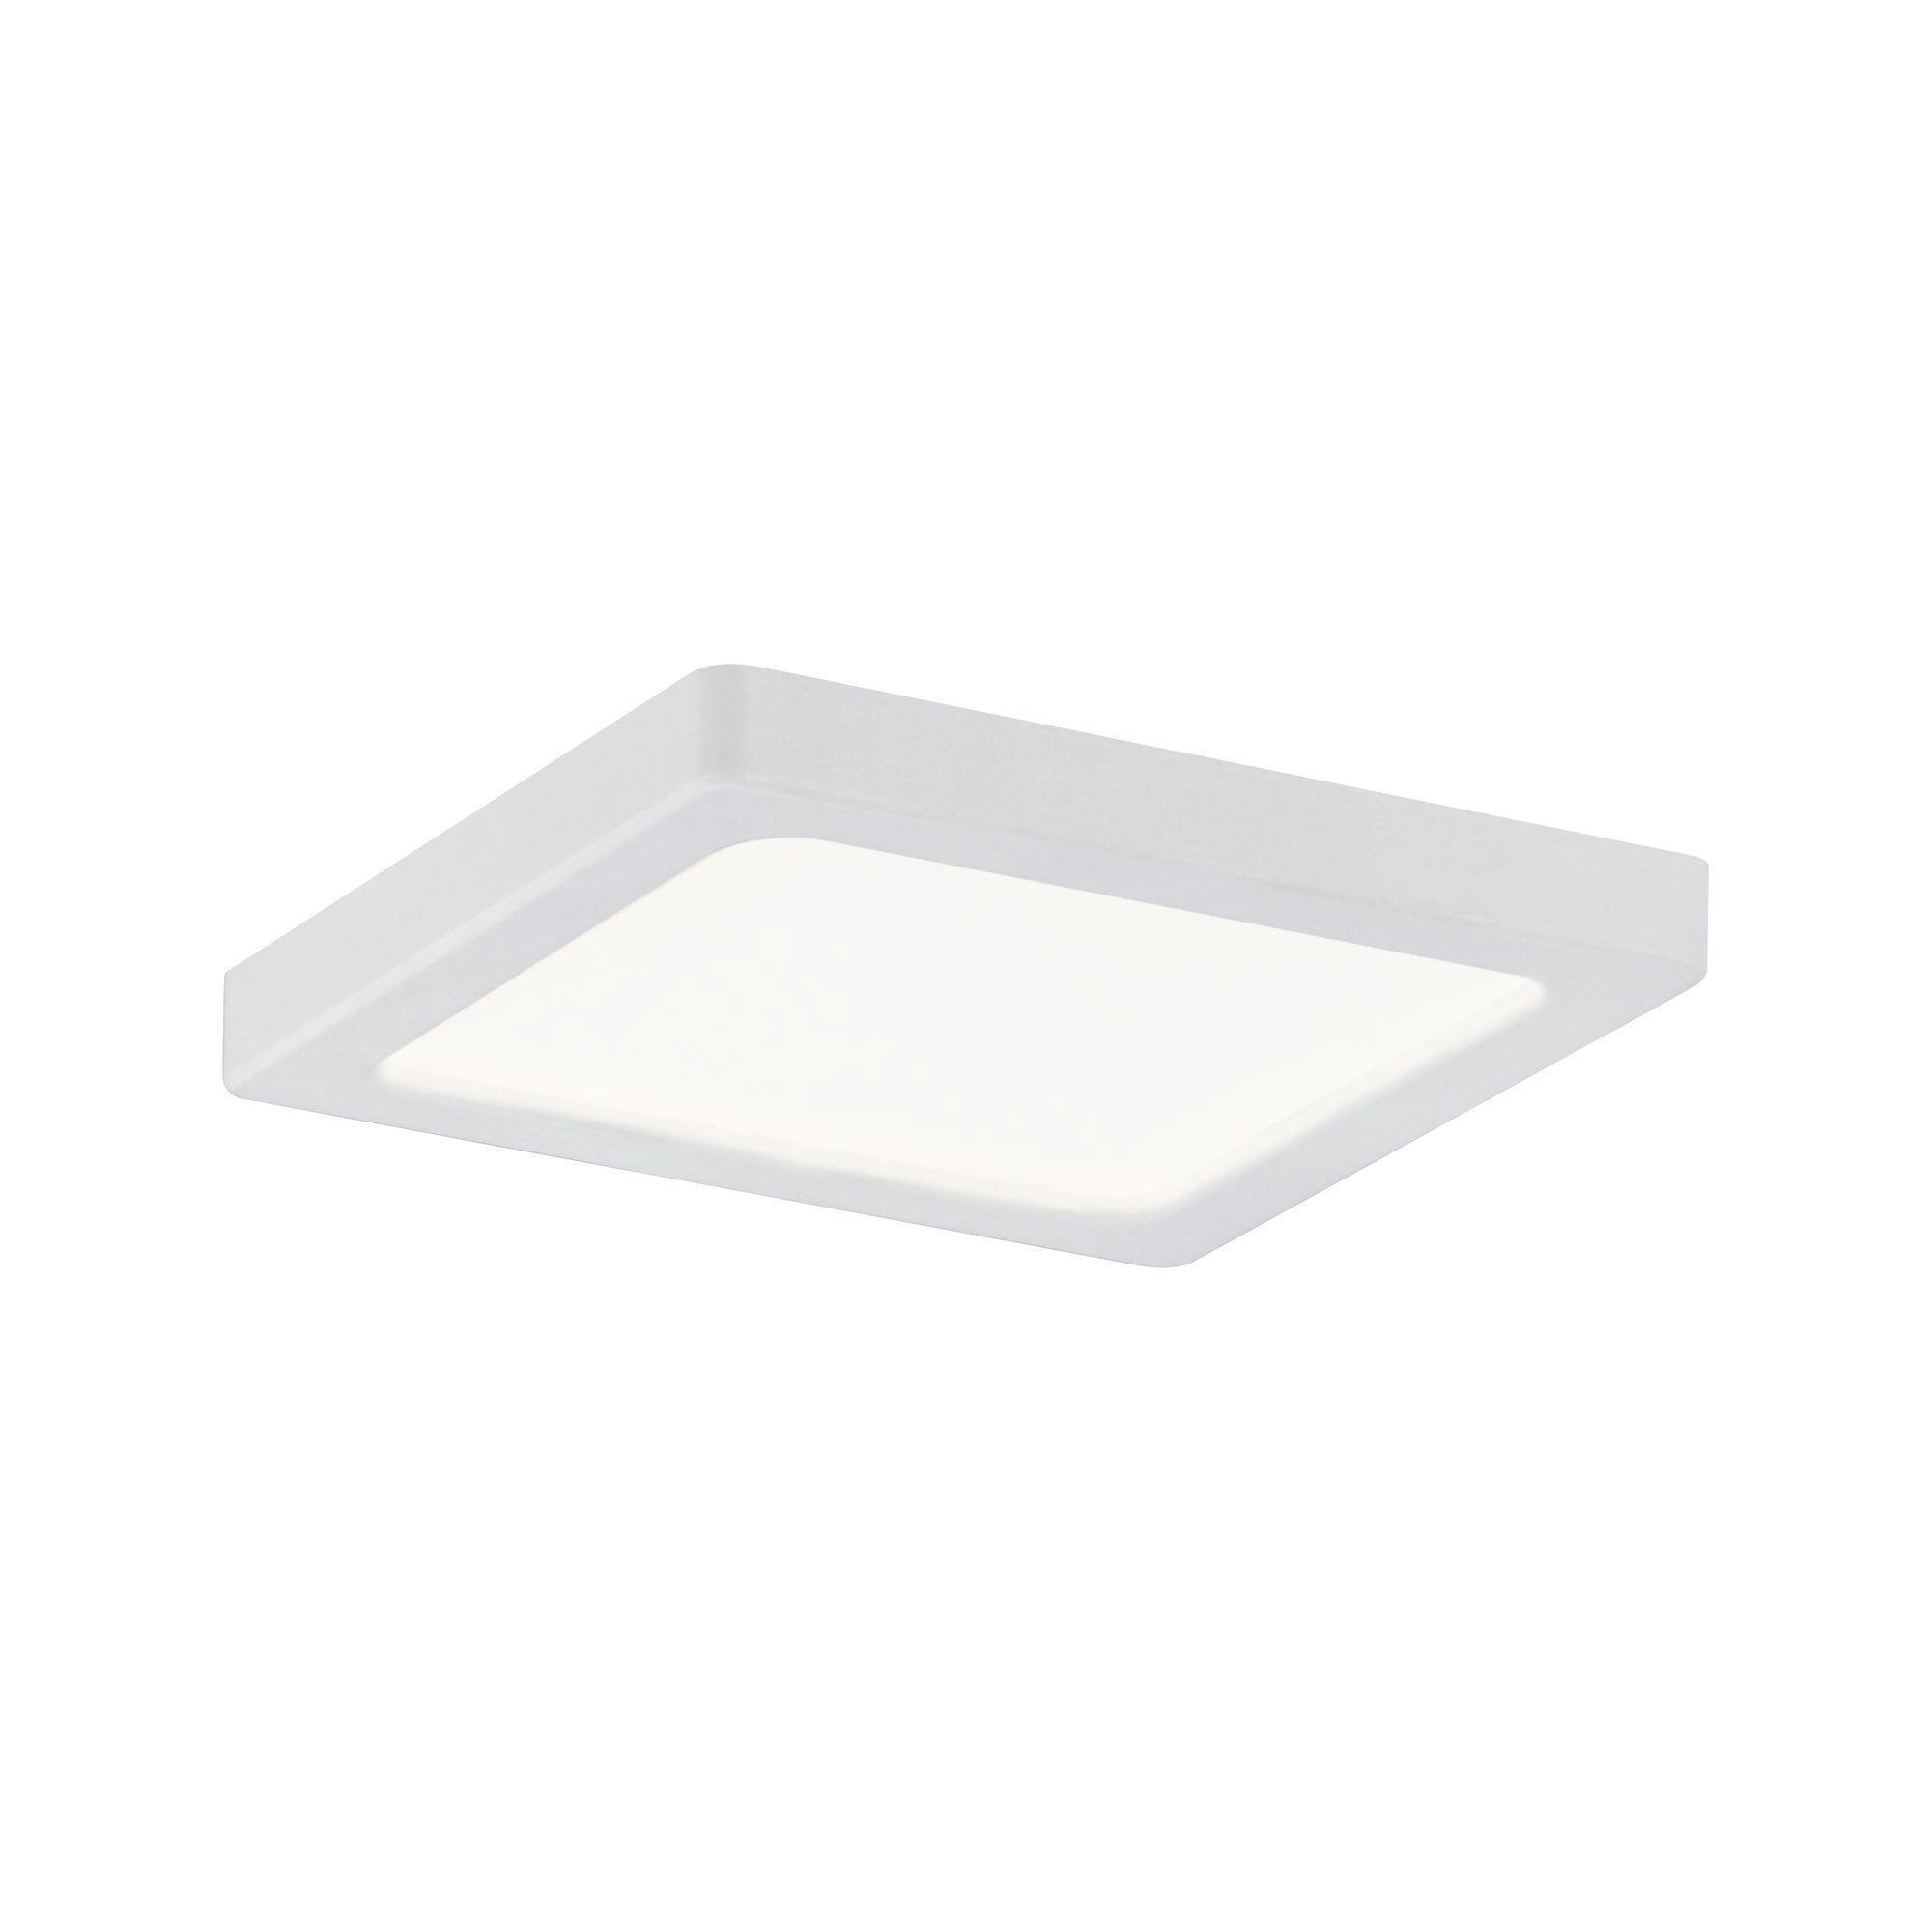 LED-PANEEL  - Weiß, Basics, Kunststoff (8/8cm) - Paulmann